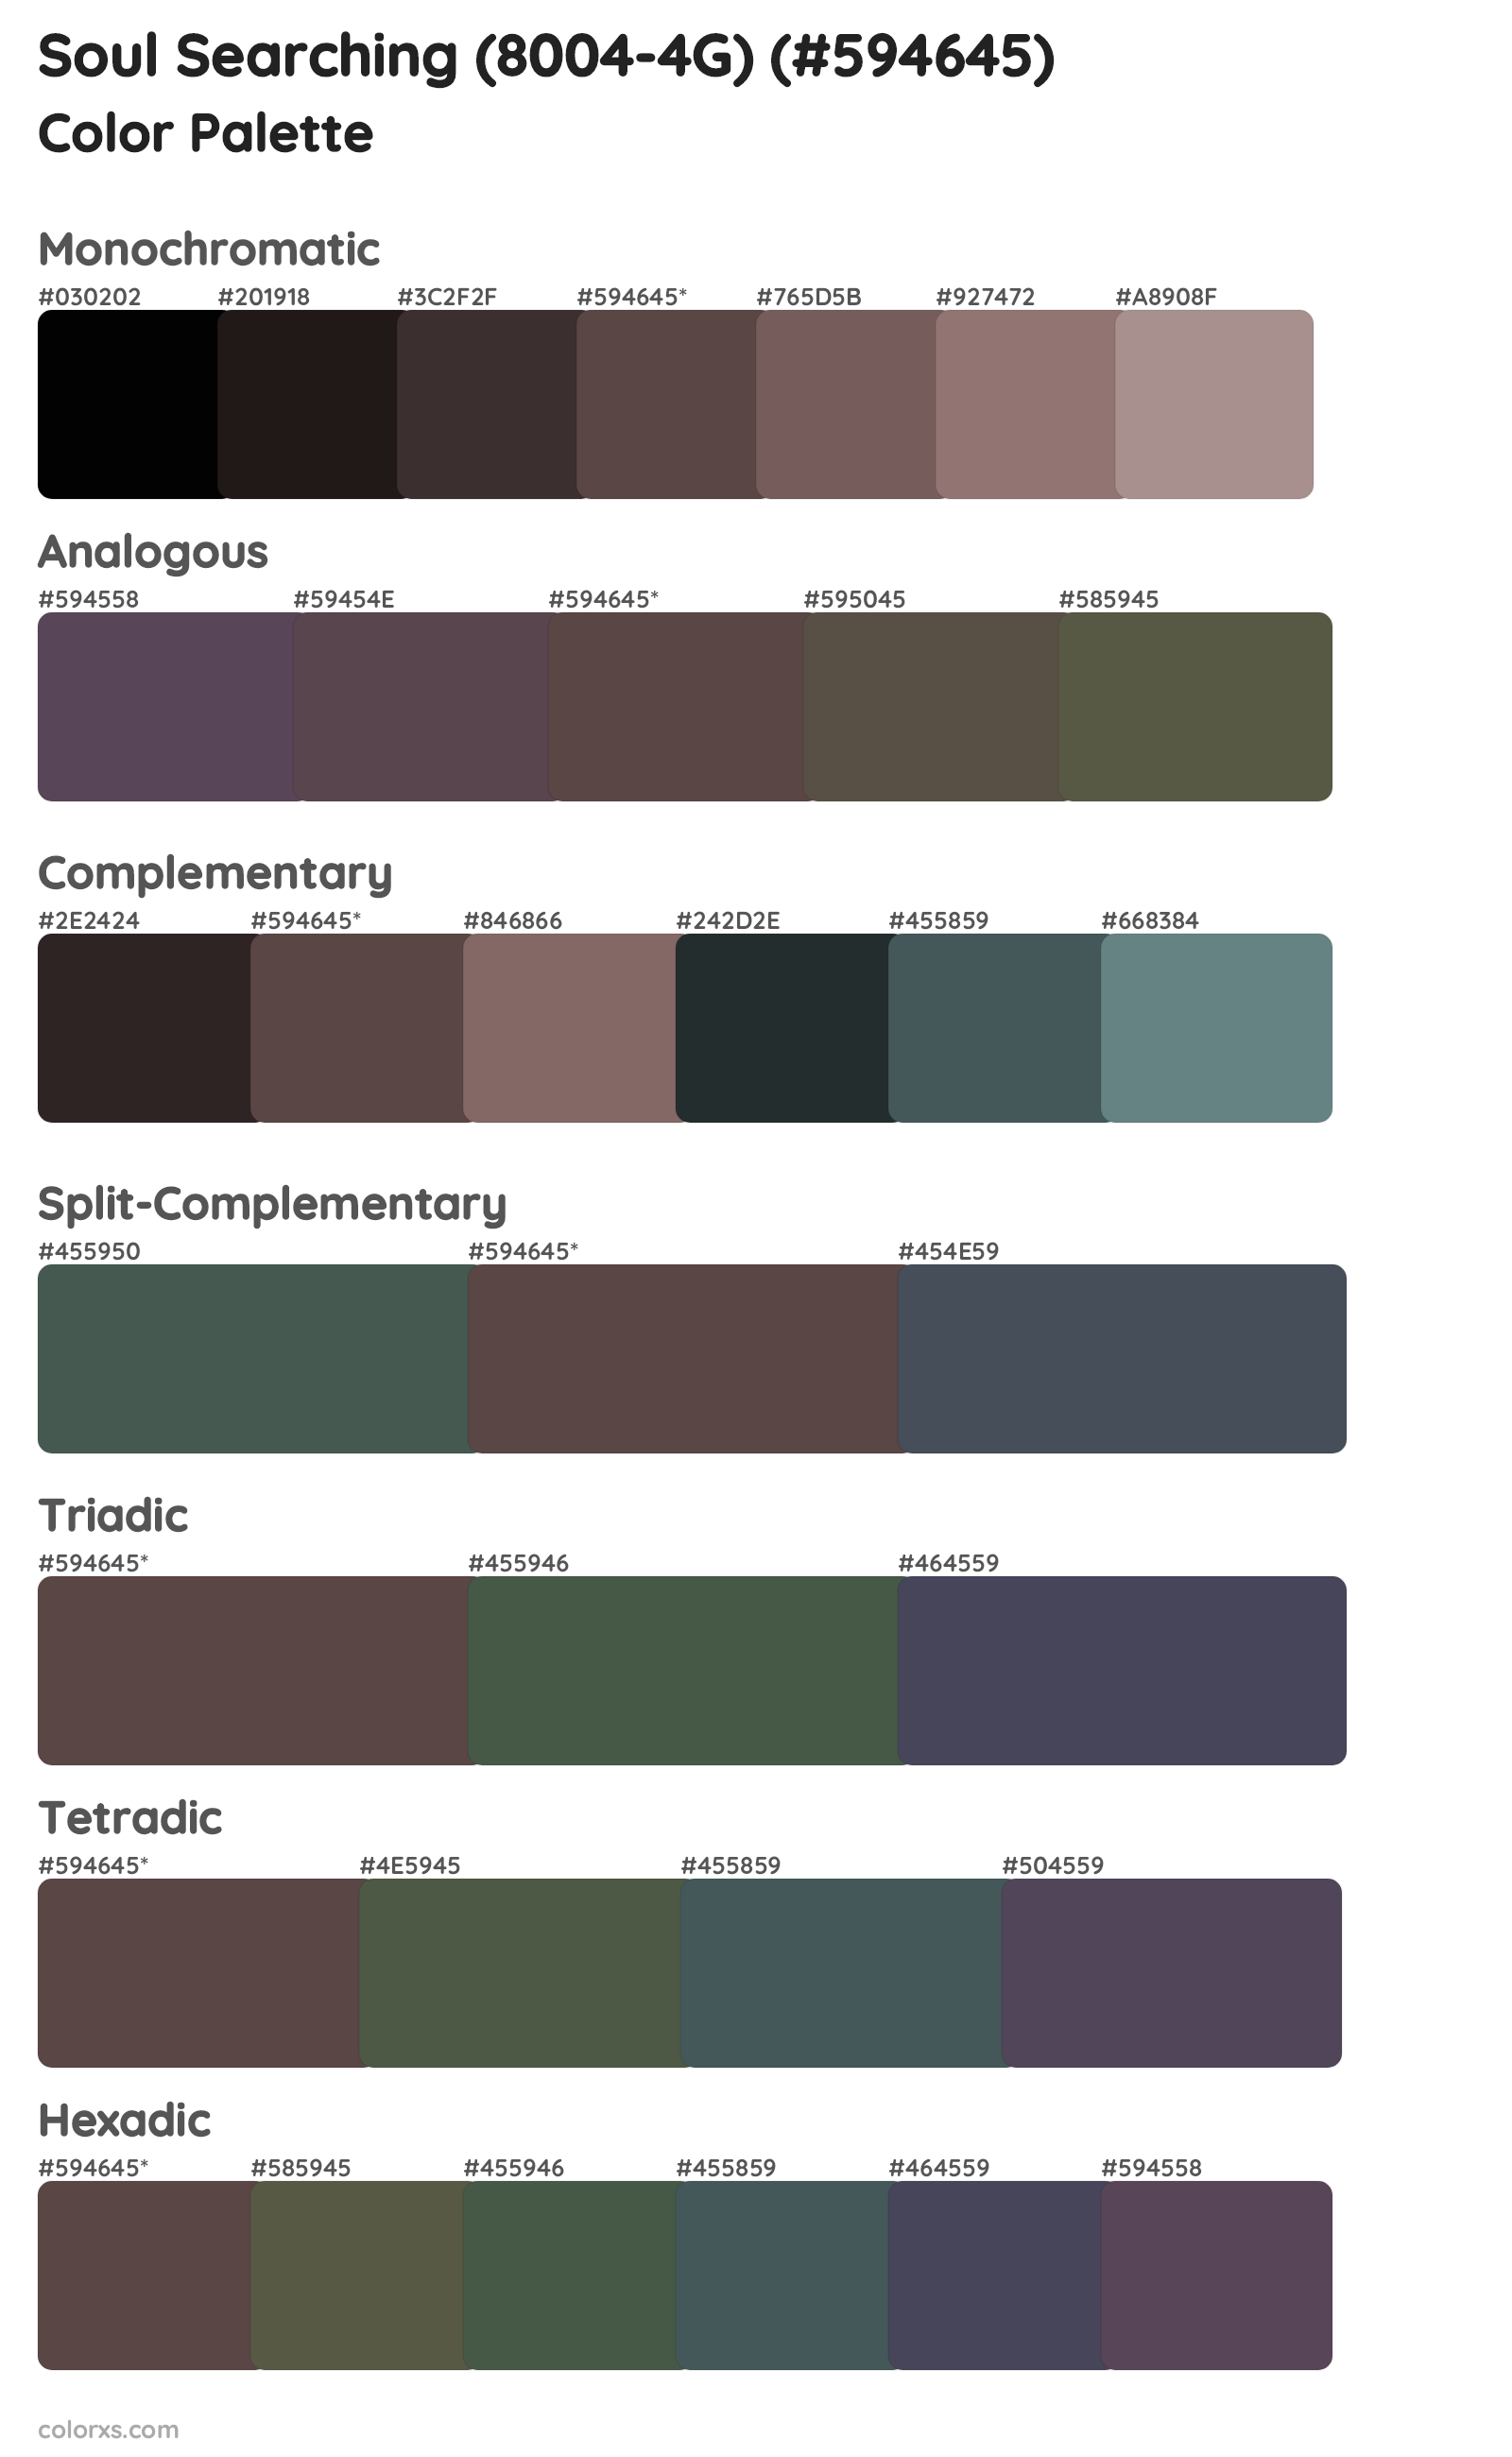 Soul Searching (8004-4G) Color Scheme Palettes